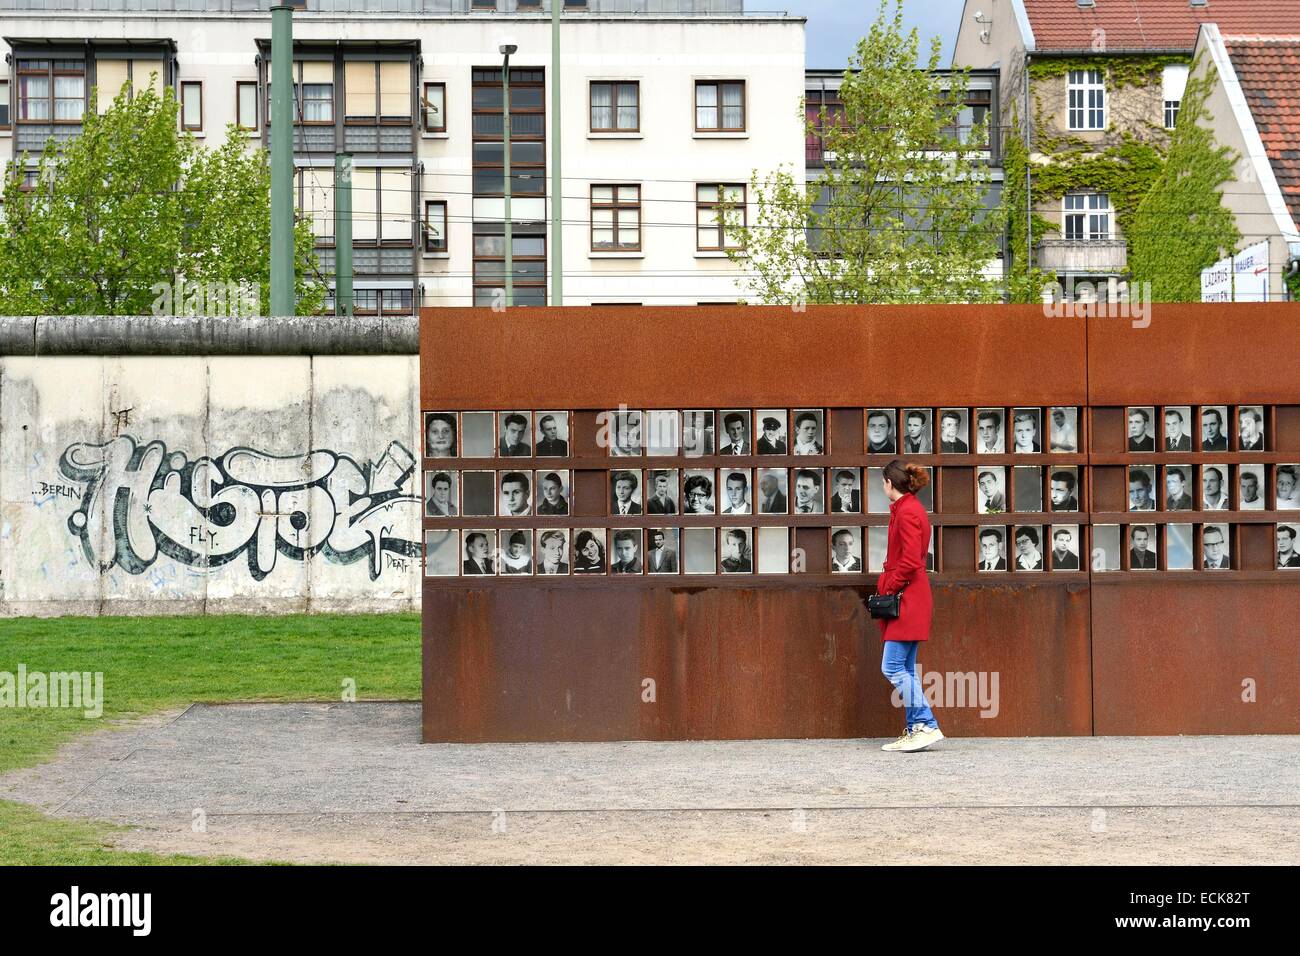 Germania, Berlino, Bernauer Strasse, Memoriale del Muro di Berlino  (GedenkstΣtte Berliner Mauer), das Fenster des Gedenkens (finestra di  ricordo) dove le vittime della parete sono onorati con il loro nome e una